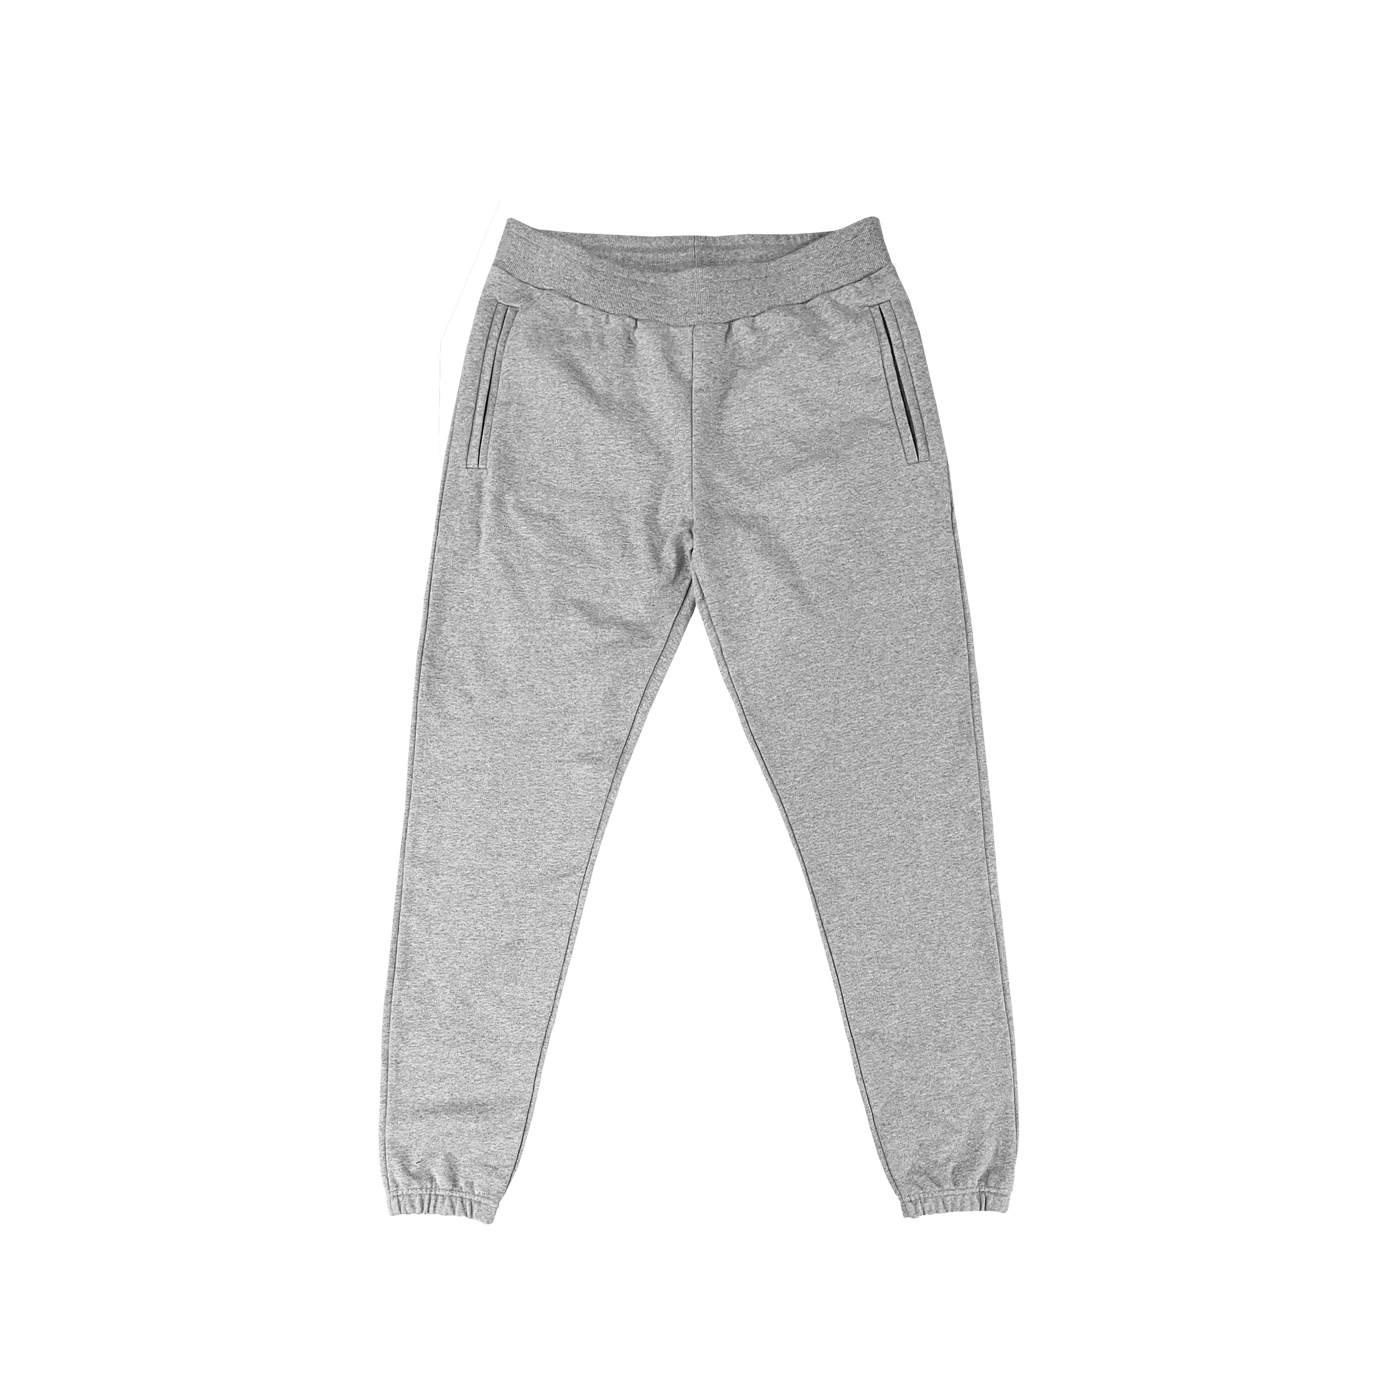 "Pantalon de survêtement gris chiné avec taille élastique, disponible pour personnalisation sur prynt.shop."